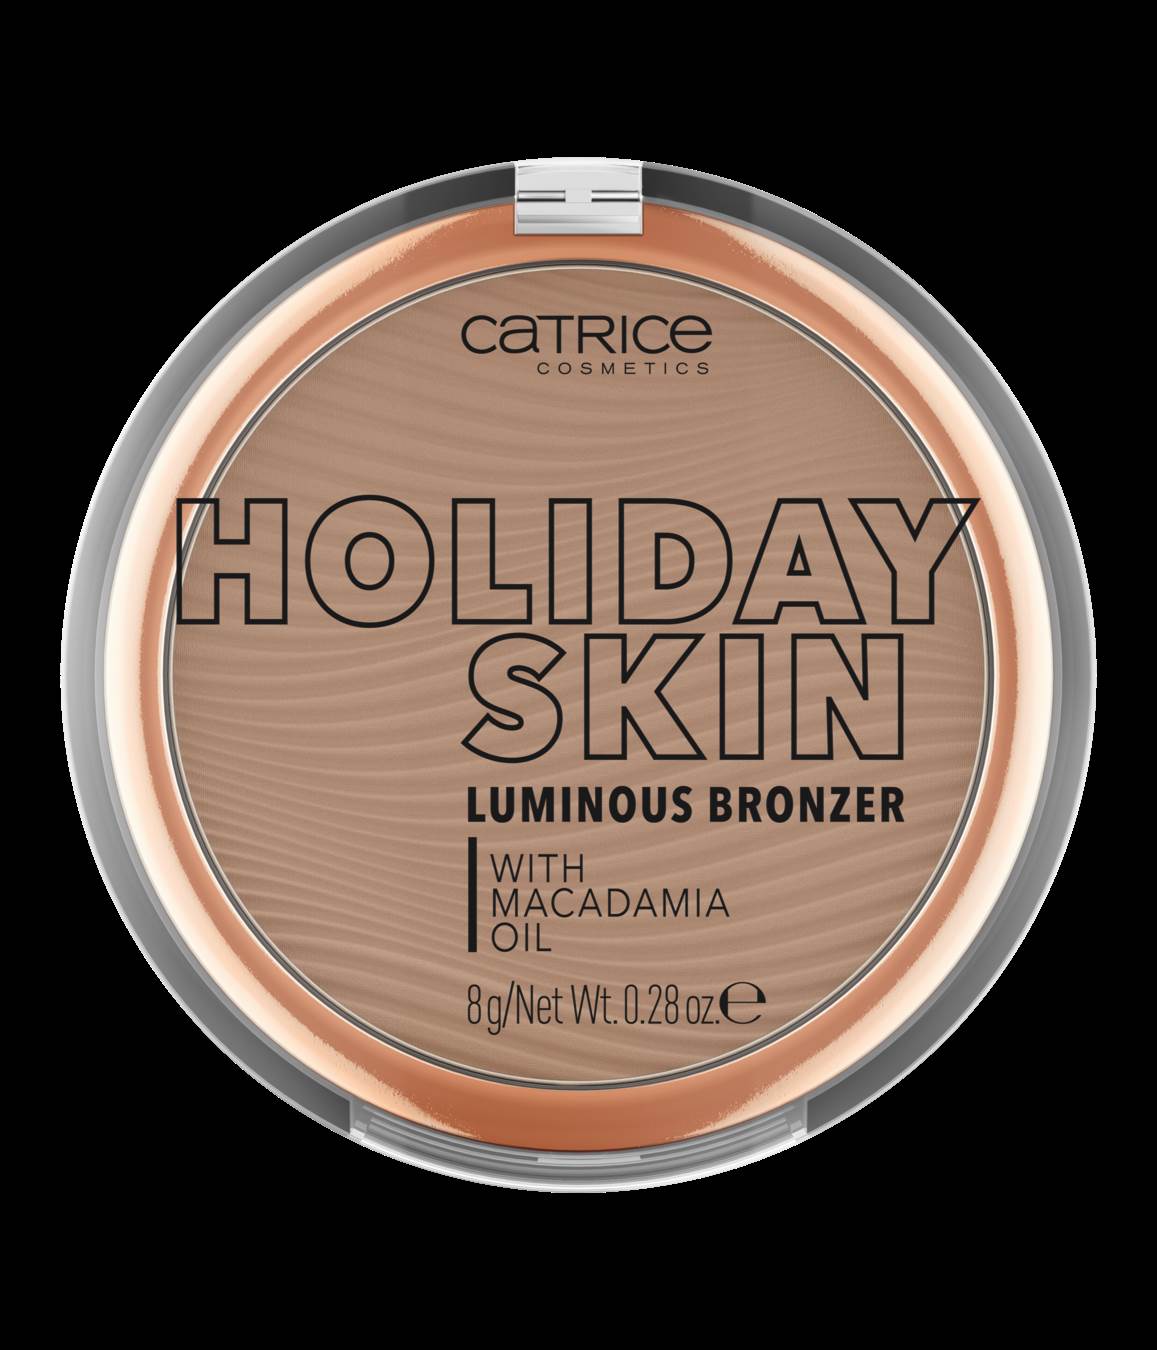  Catrice Holiday Skin Luminous Bronzer 